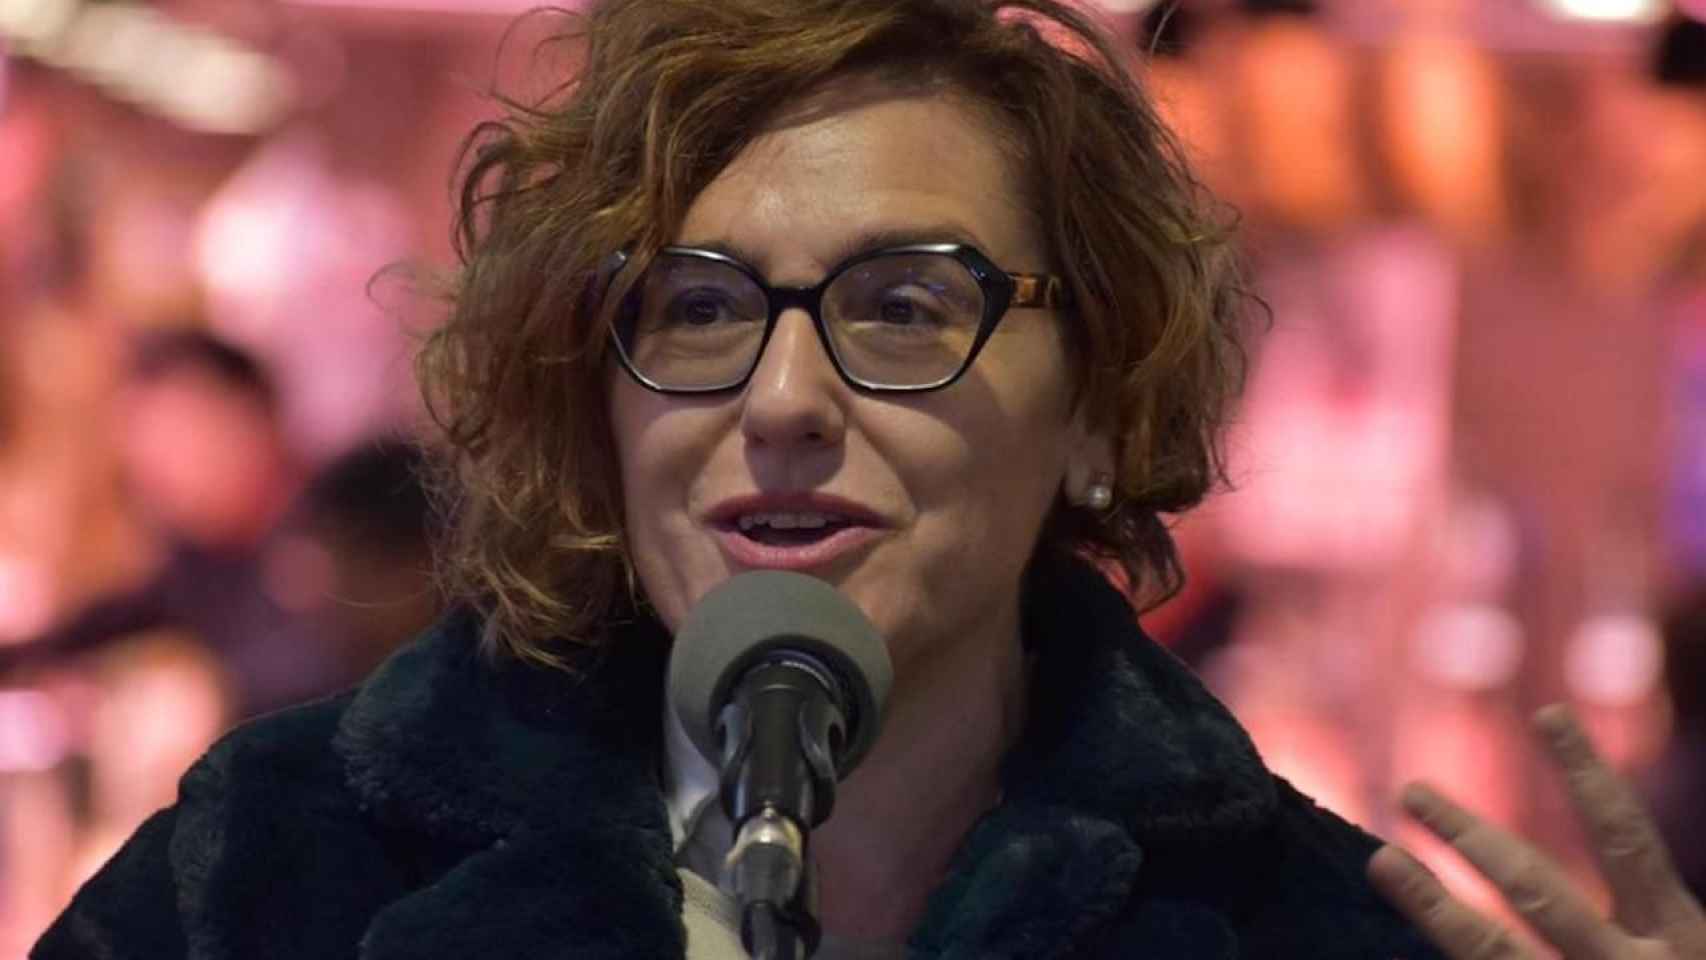 La regidora Montserrat Ballarín anuncia cambios en los presupuestos por la crisis / SERGI VARGAS PSC